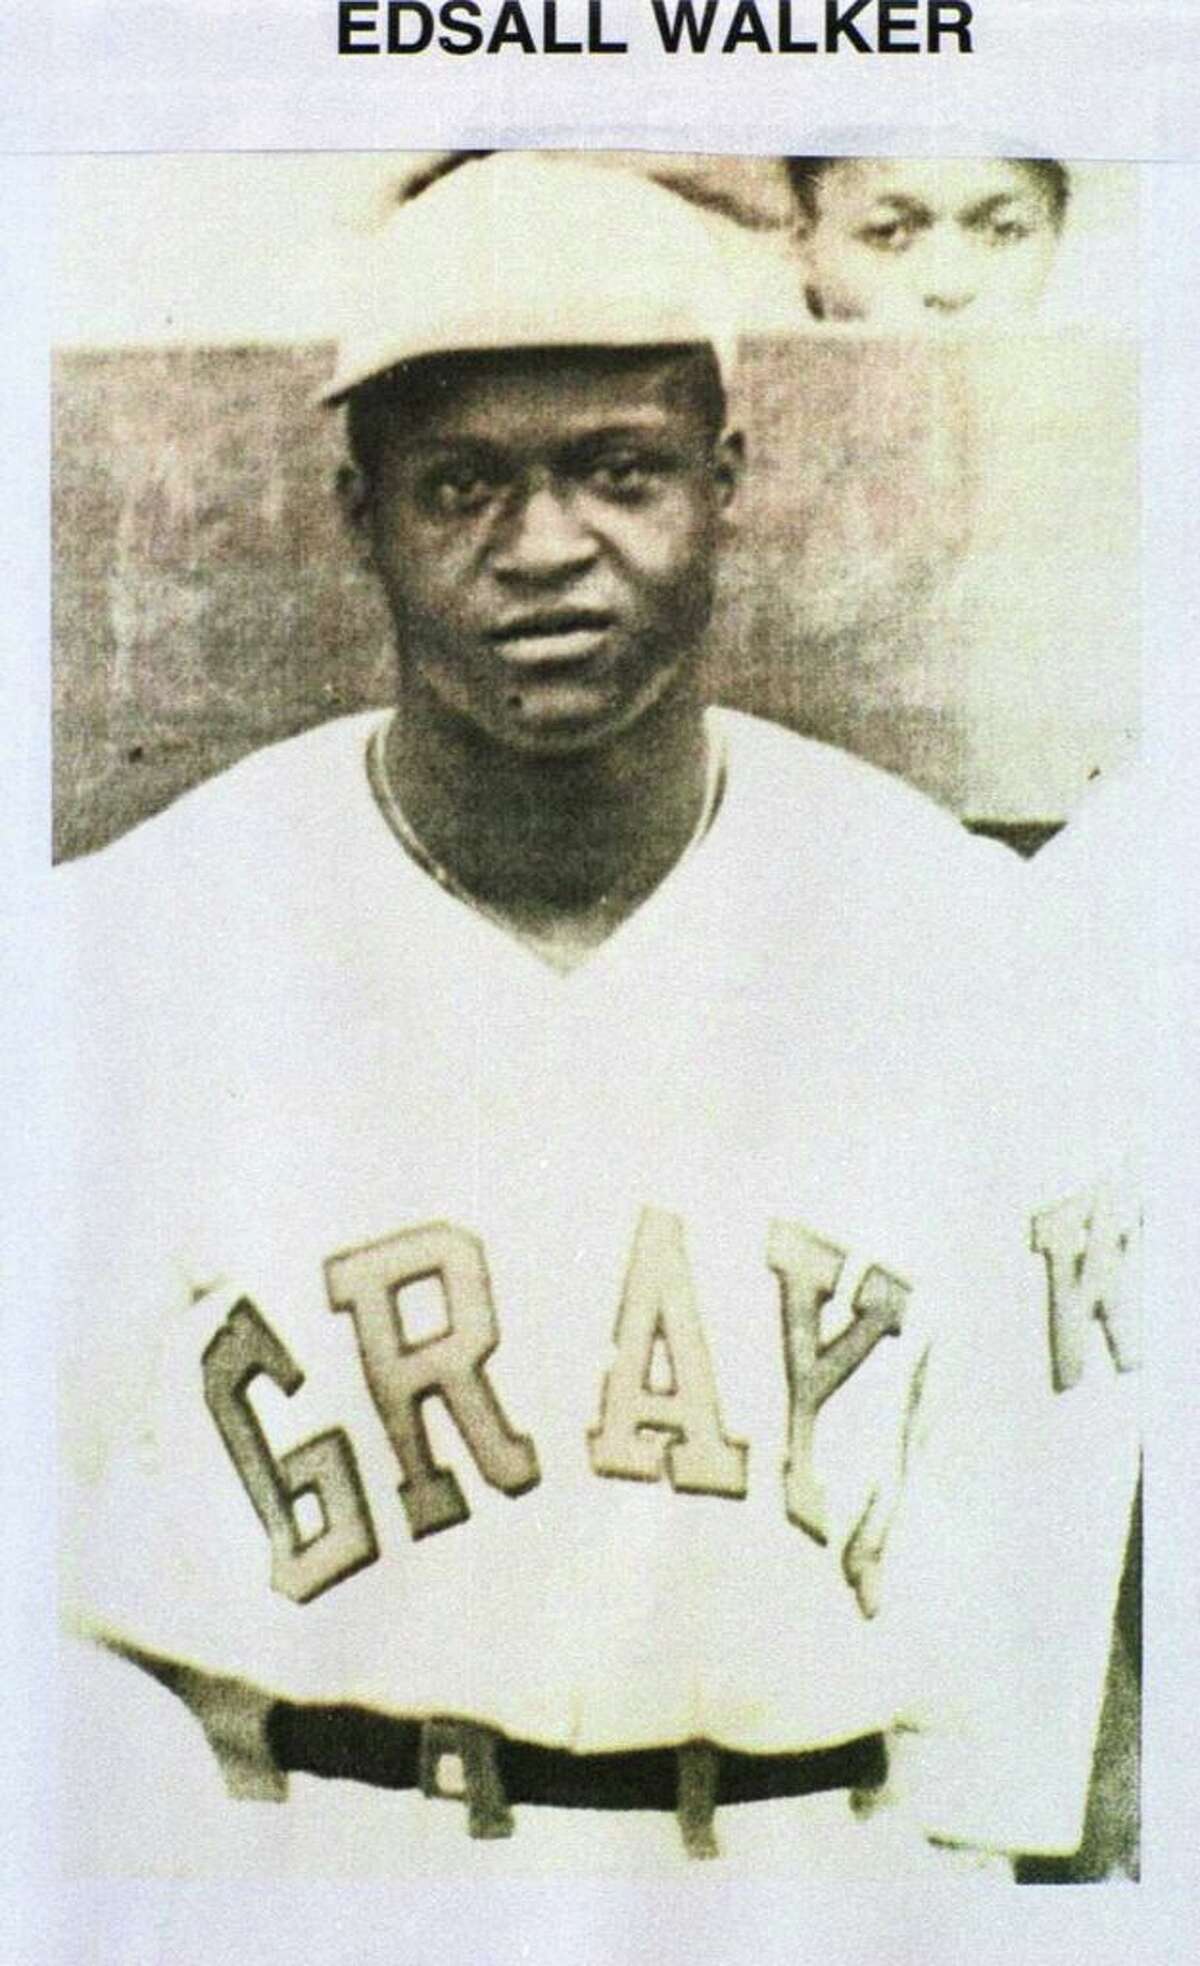 Negro League Baseball History Poster